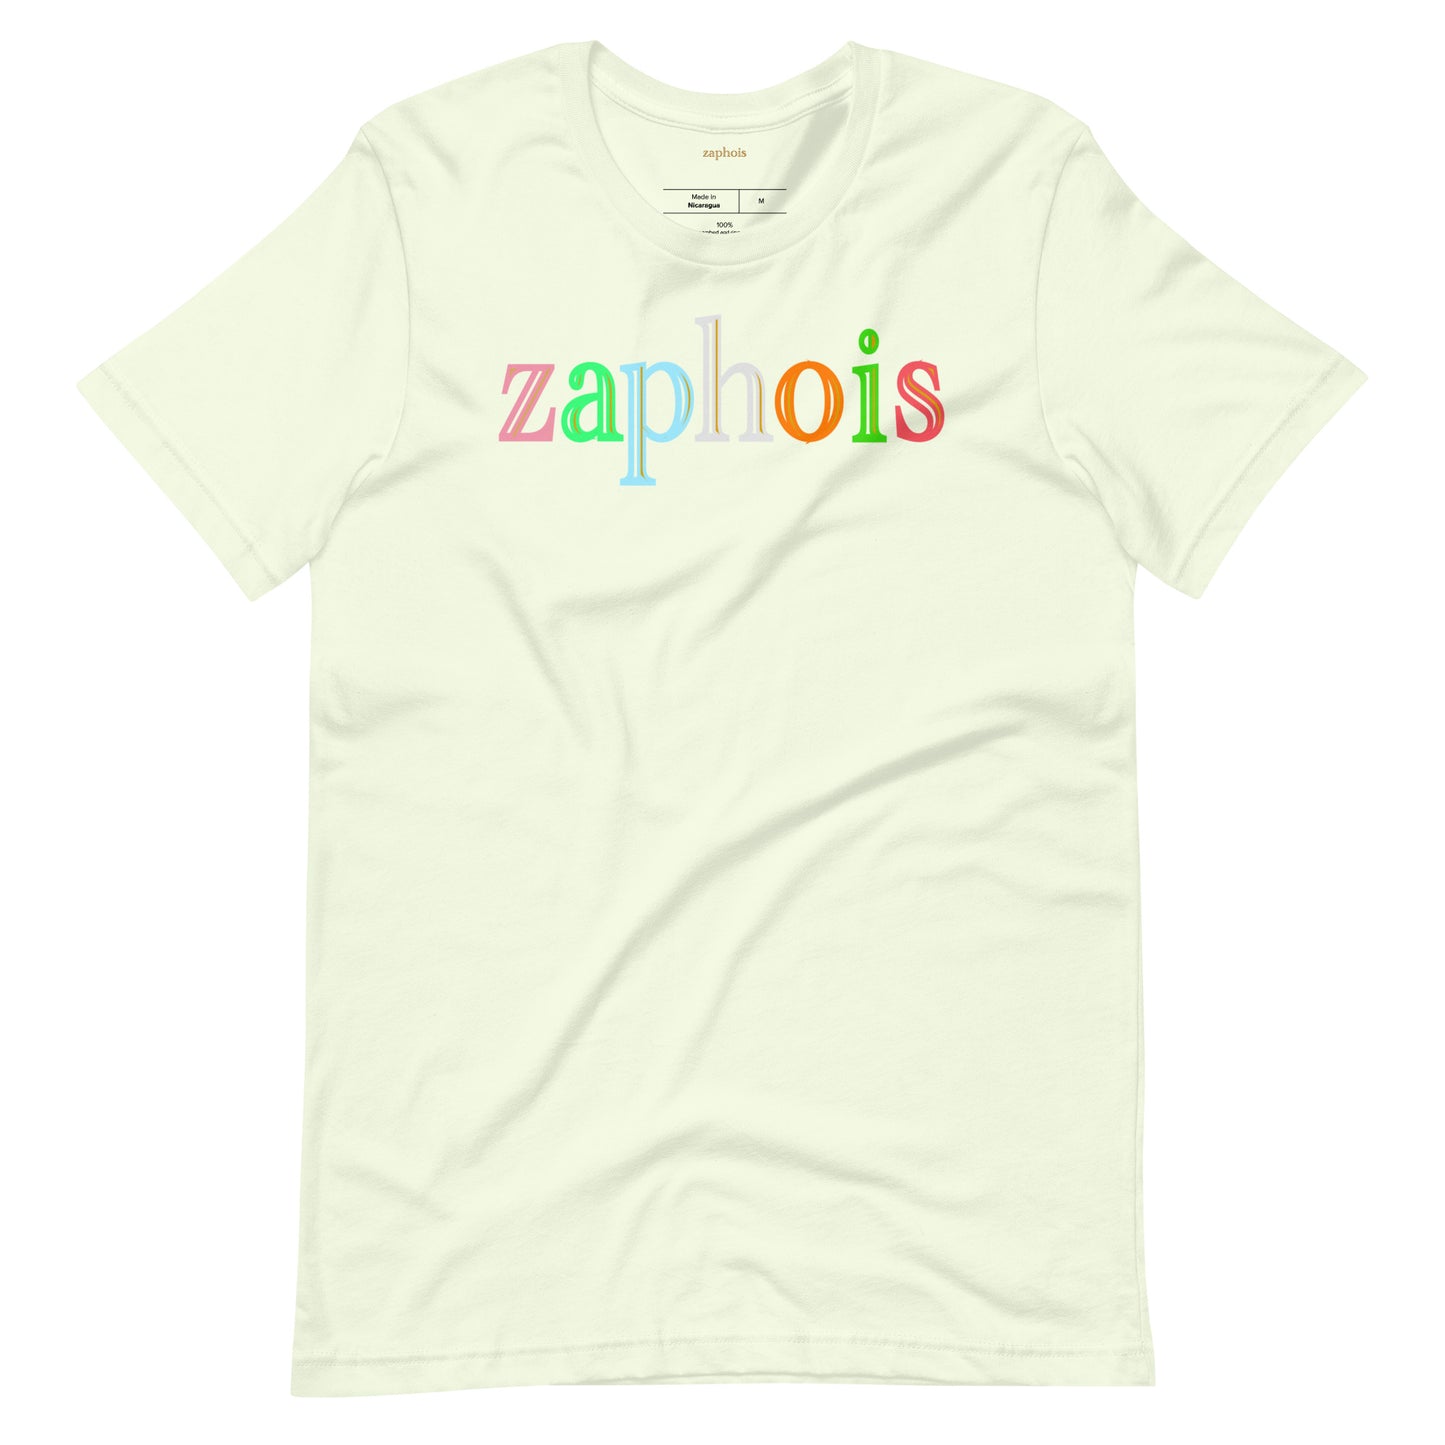 zaphois 7 citron shirt